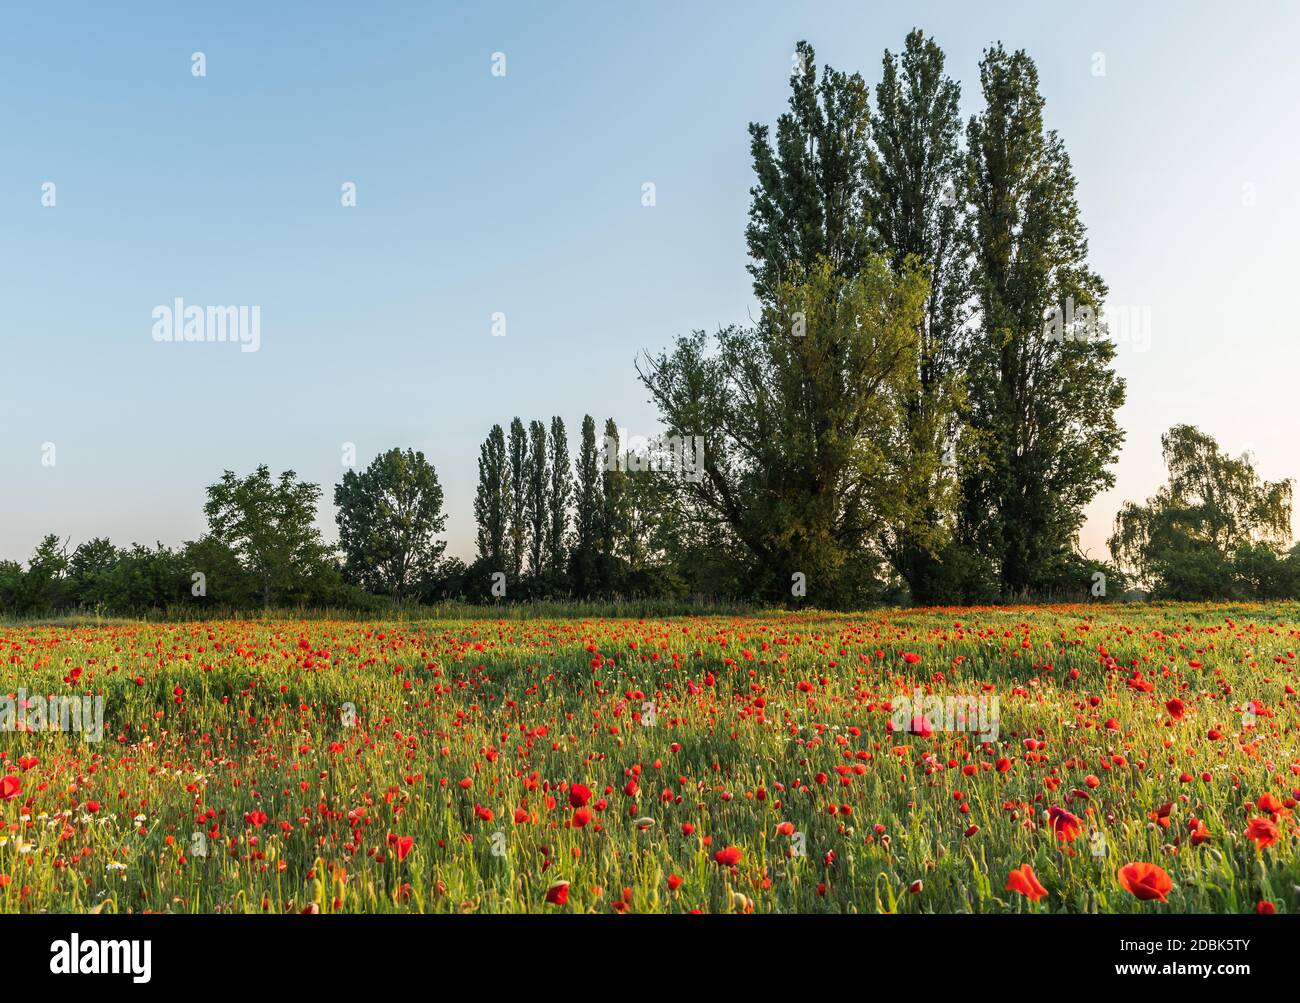 Blühendes Mohnfeld mit Bäumen im Hintergrund Foto Stock